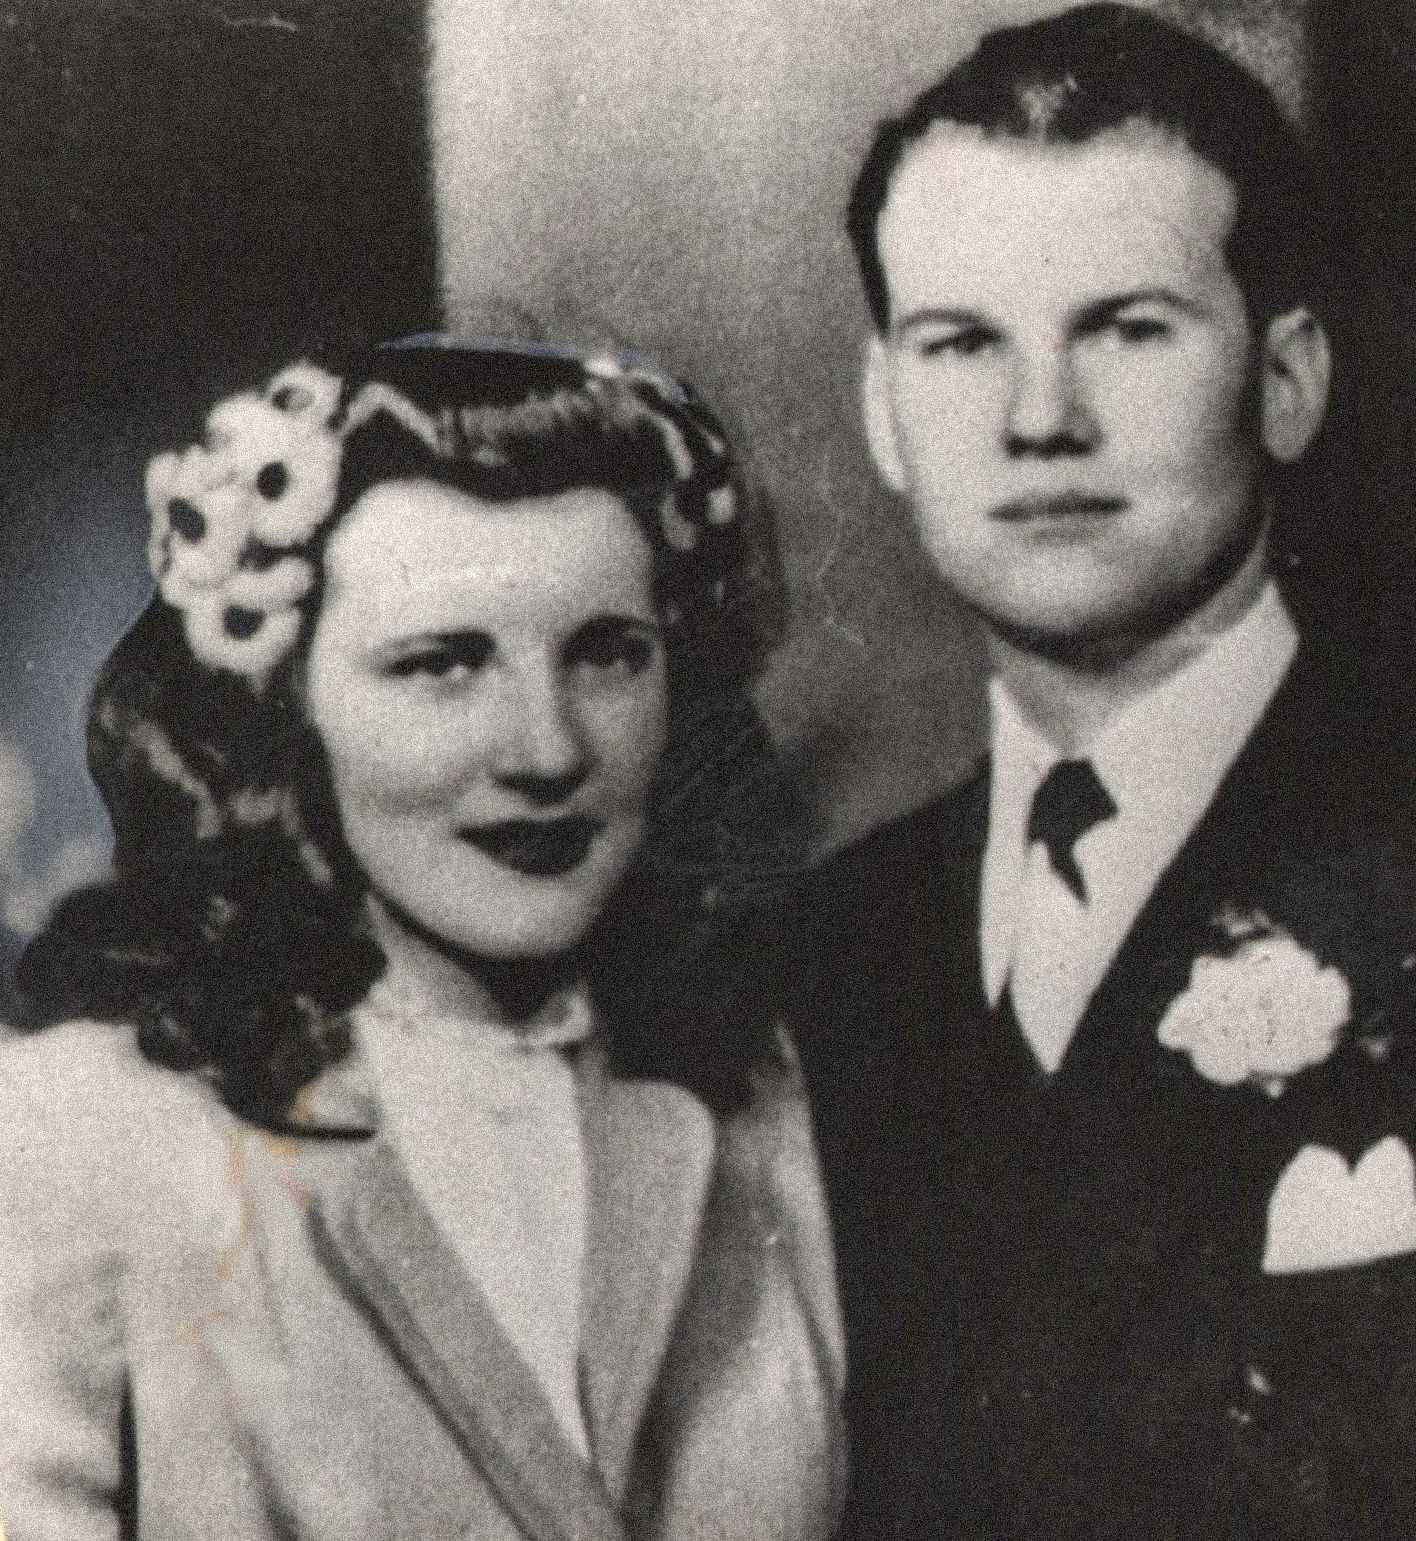 На слици су Сем и Мерилин Шепард, млад и наизглед срећан пар. Њих двоје су се венчали 21. фебруара 1945. и имали су једно дете, Сема Риза Шепарда. Мерилин је била трудна са својим другим дететом у време њеног убиства.